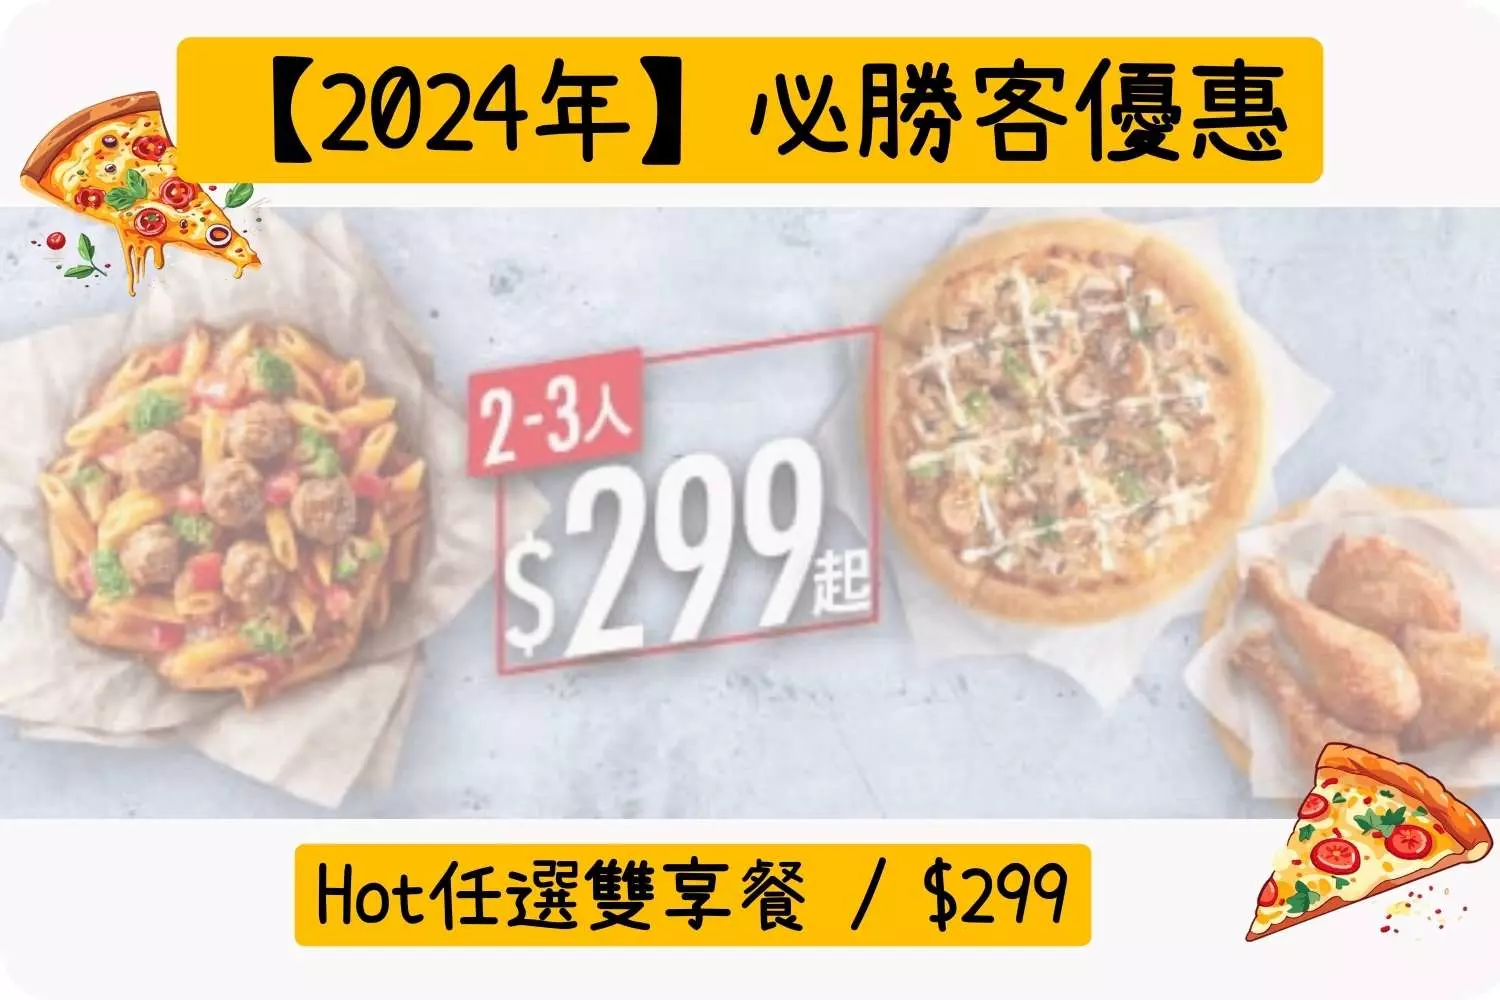 Hot任選雙享餐 / $299